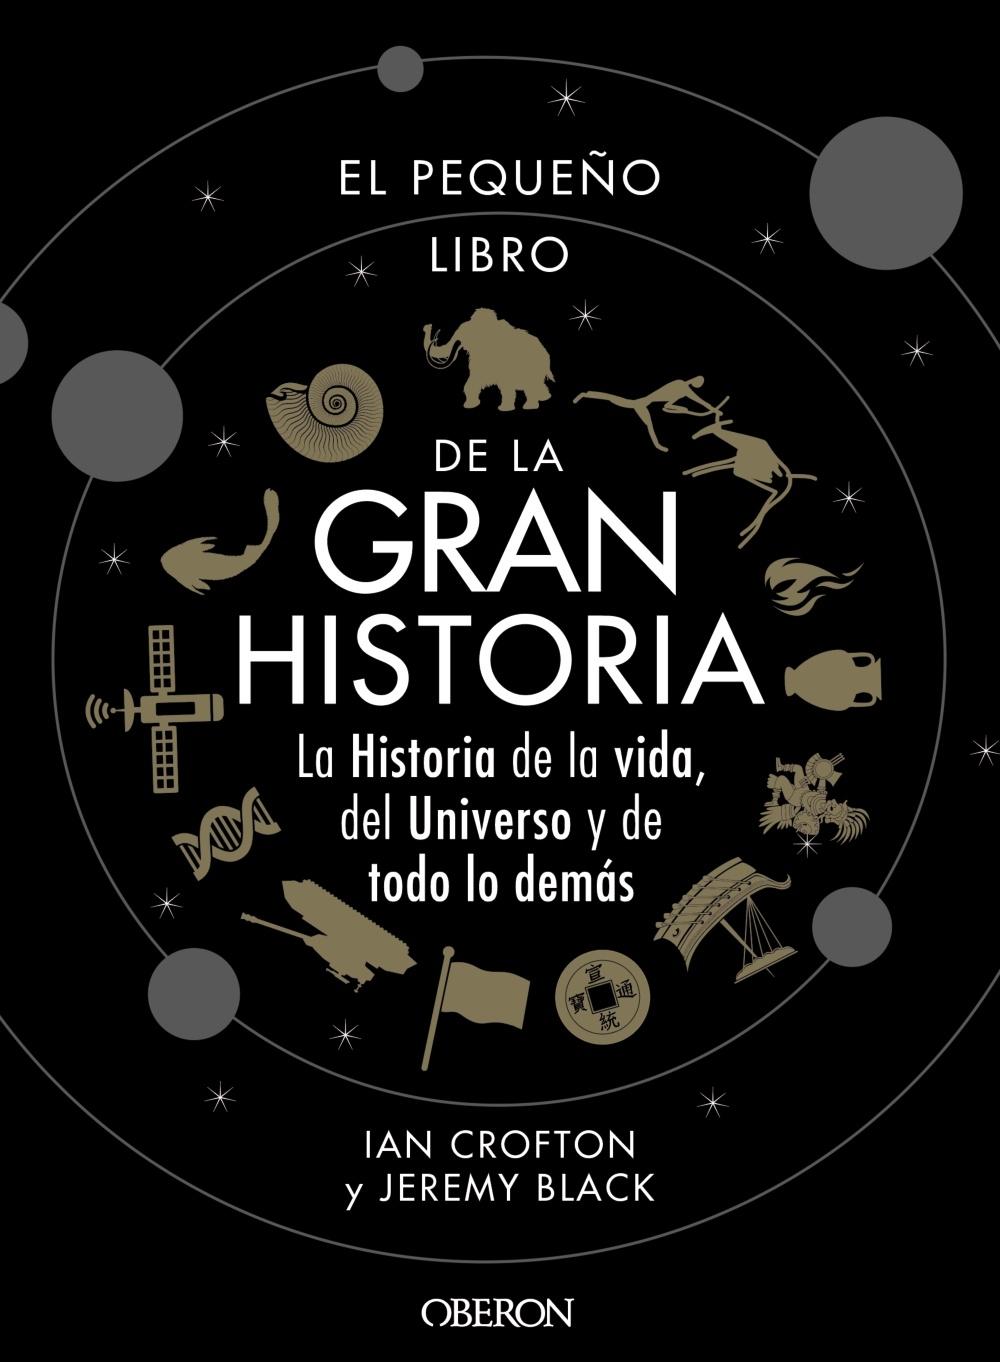 El pequeño libro de la Gran Historia "La historia de la vida, del universo y de todo lo demás"